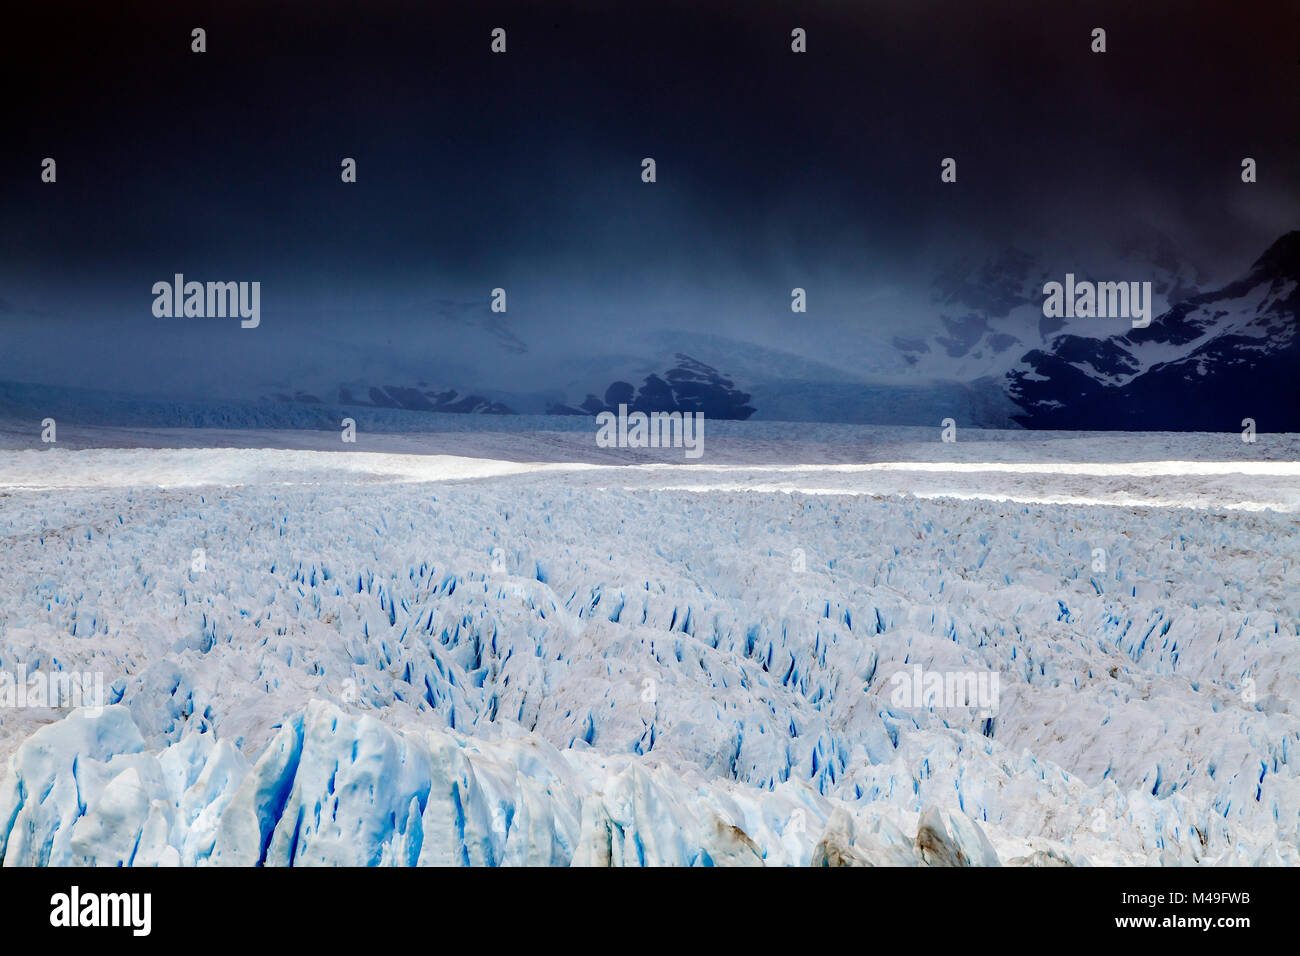 Perito Moreno Glacier, Patagonie, Sud de l'Argentine. Janvier 2014. Banque D'Images